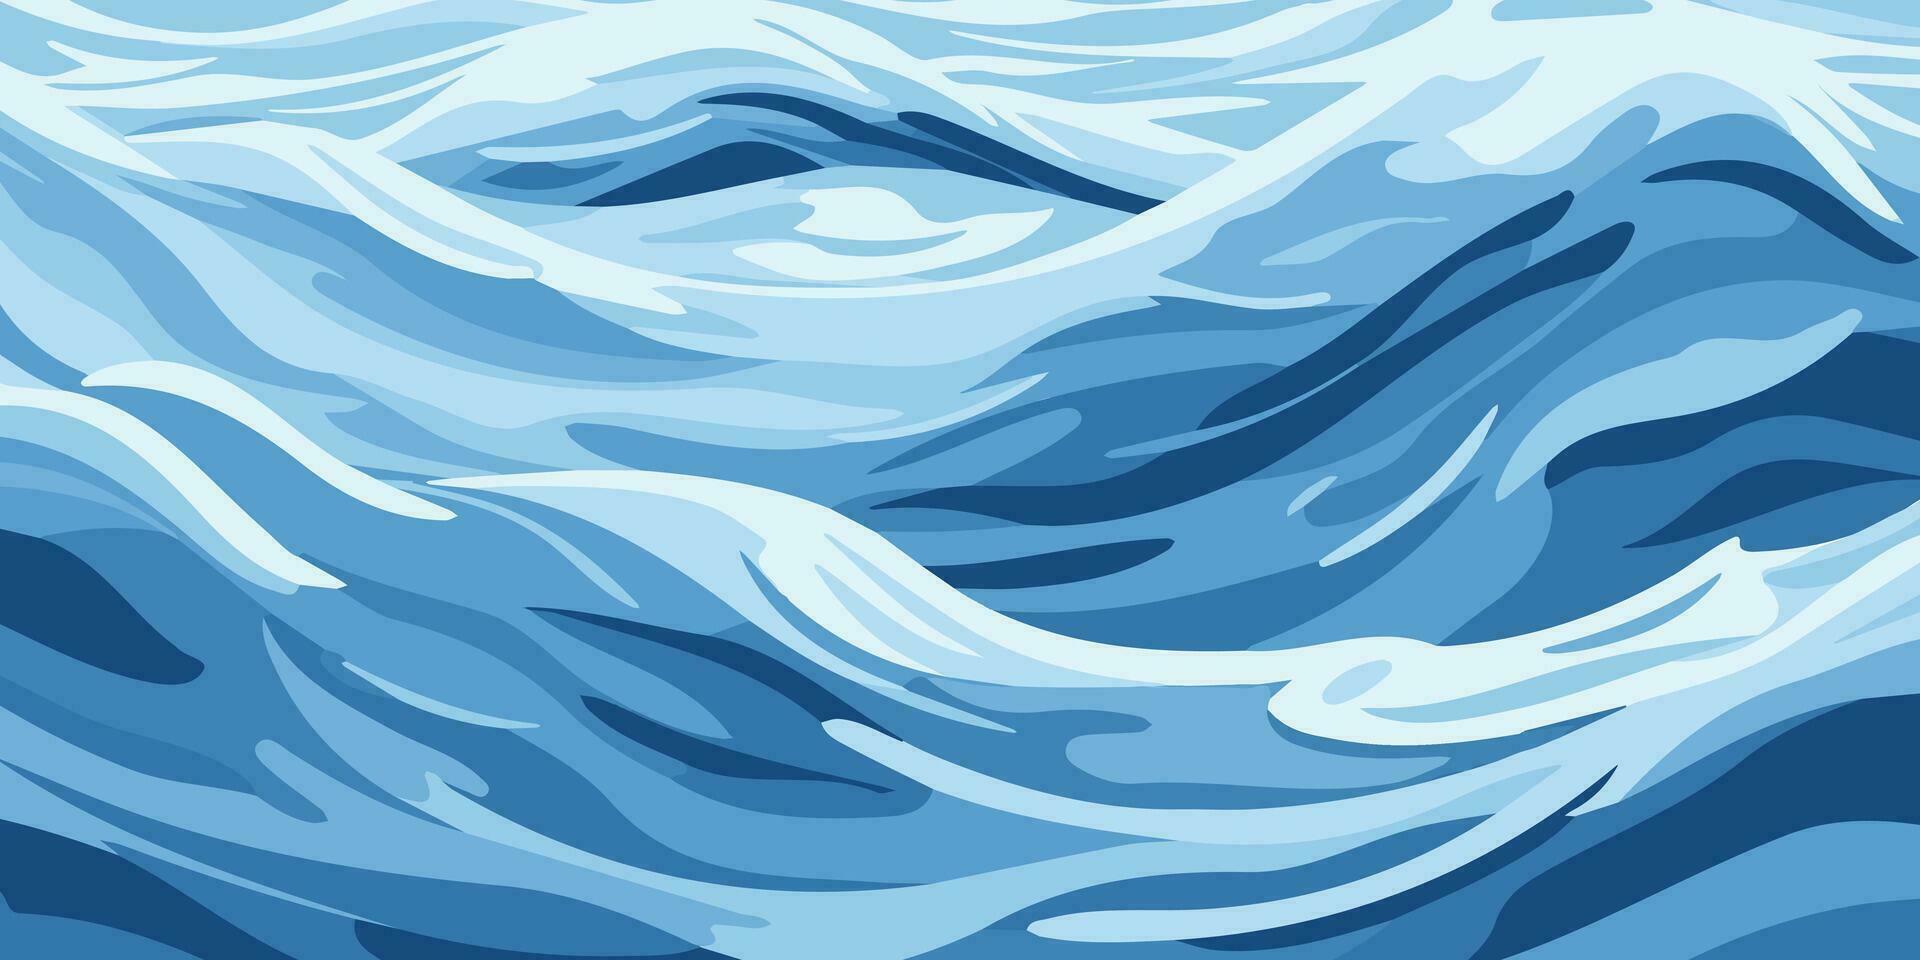 blauw rimpelingen en water spatten golven oppervlakte vlak stijl ontwerp vector illustratie.